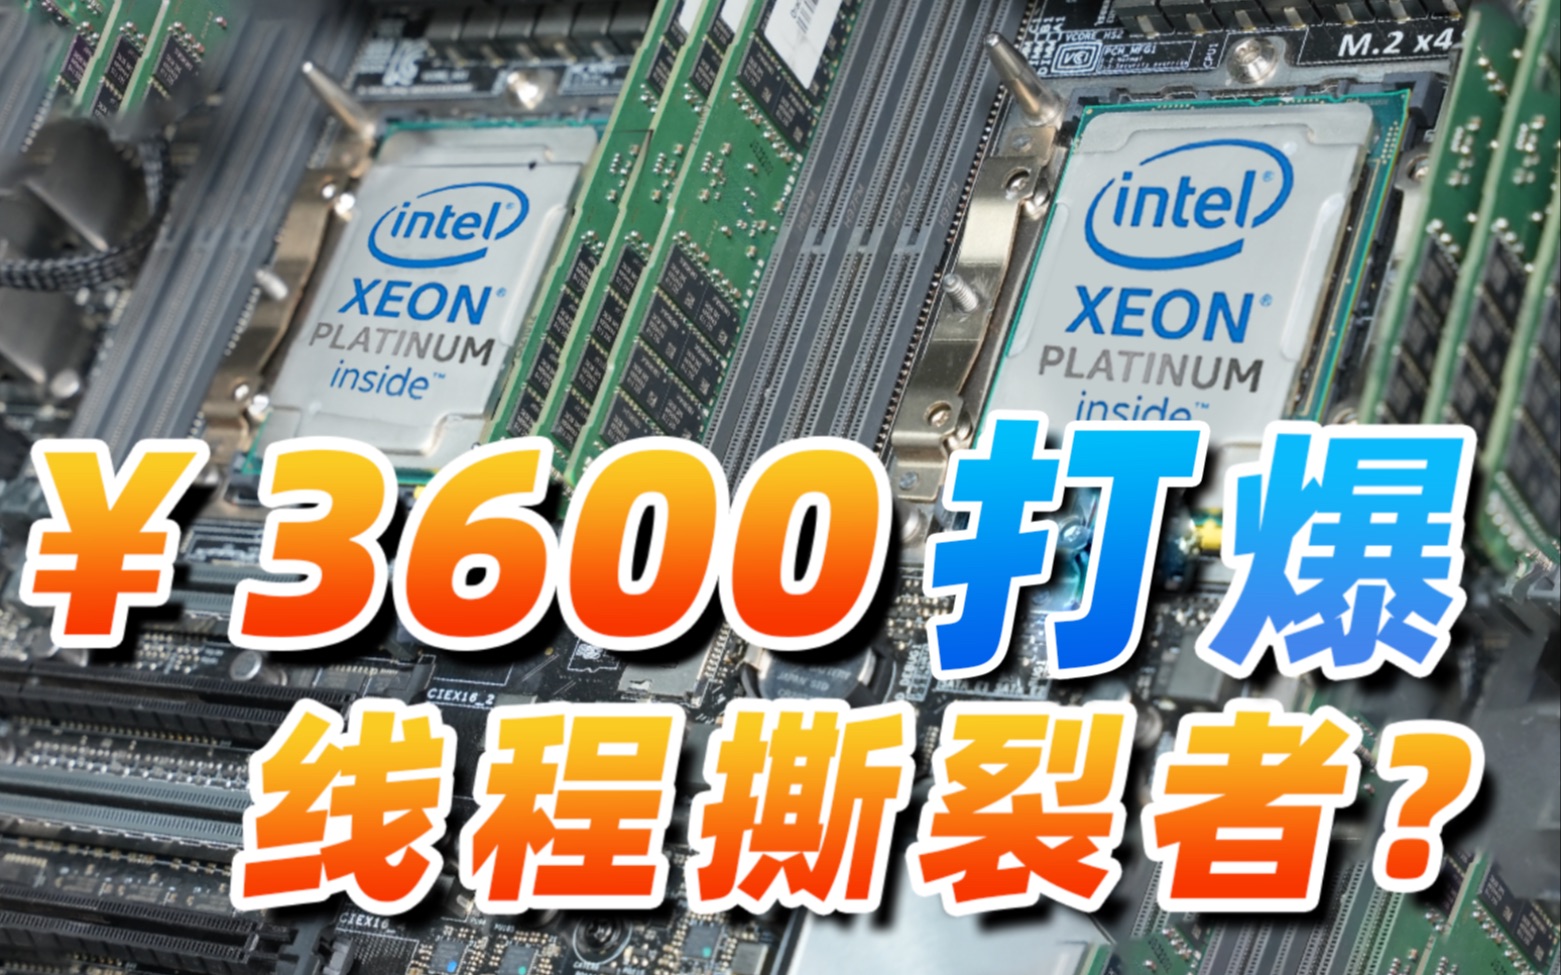 3600块钱捡到48核96线程的服务器CPU，能打爆线程撕裂者么？